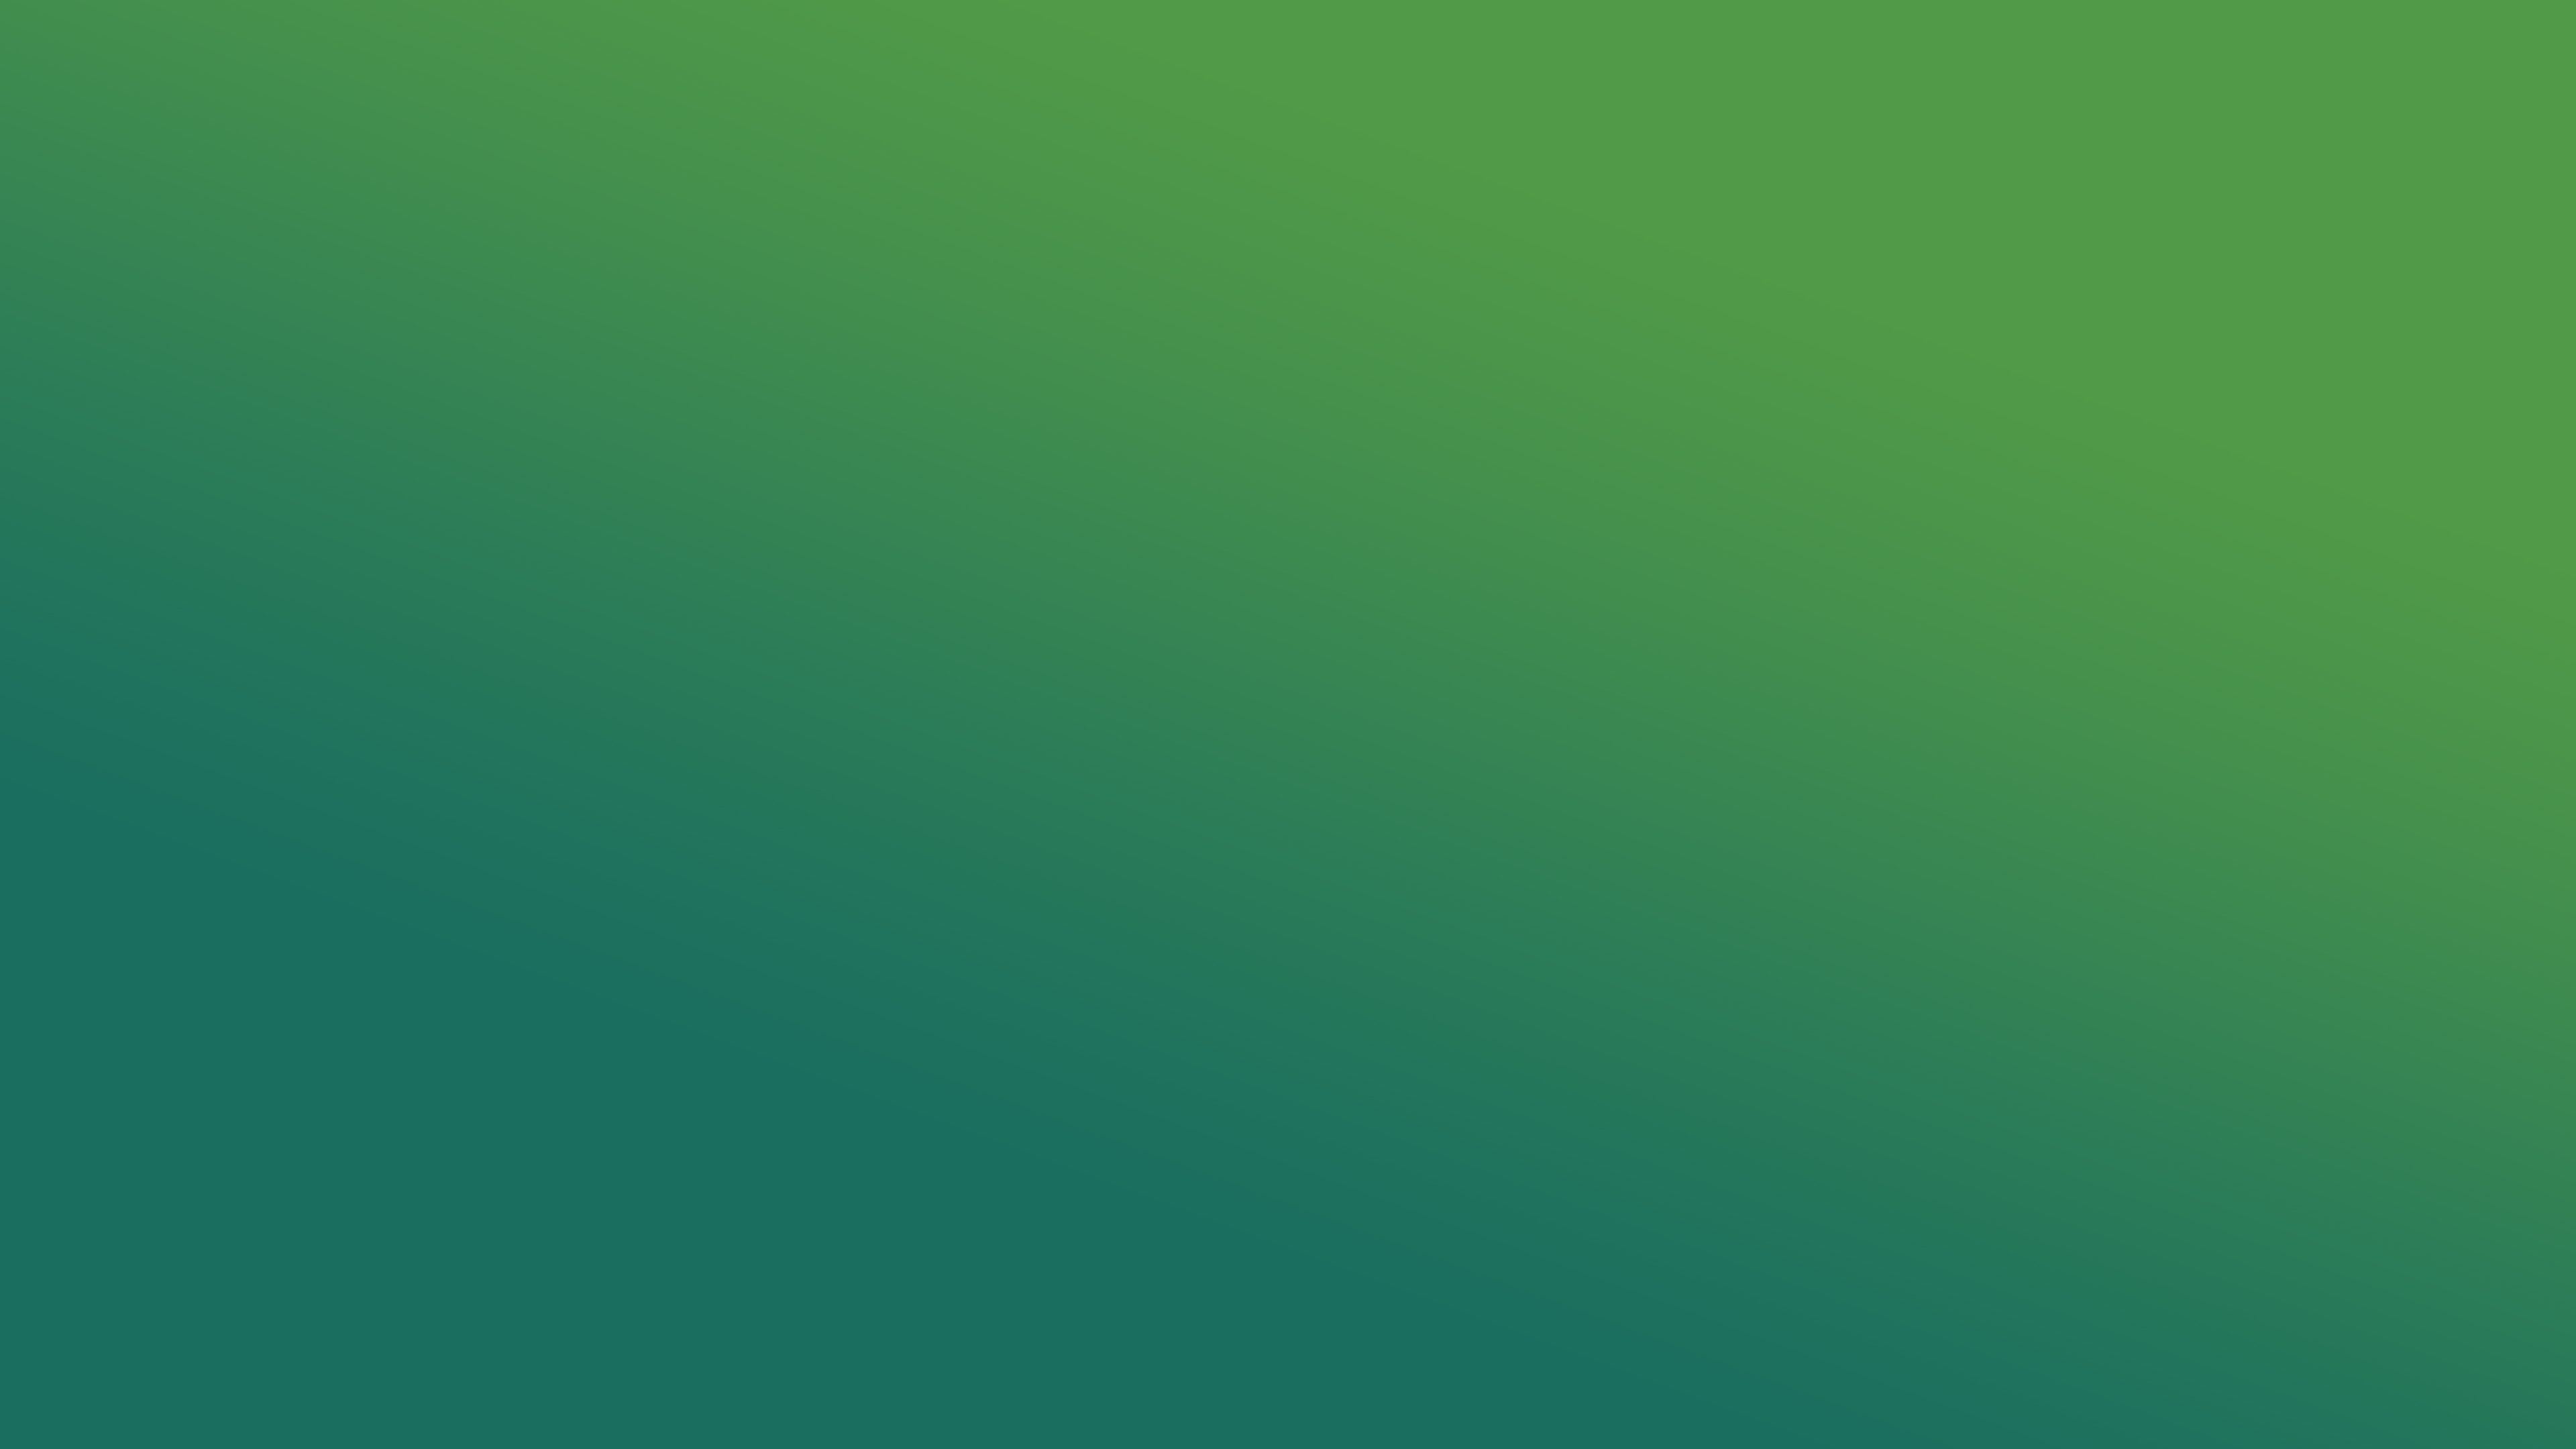 عکس جالب از گرادیان با رنگ سبز طبیعی مناسب تصویر زمینه 